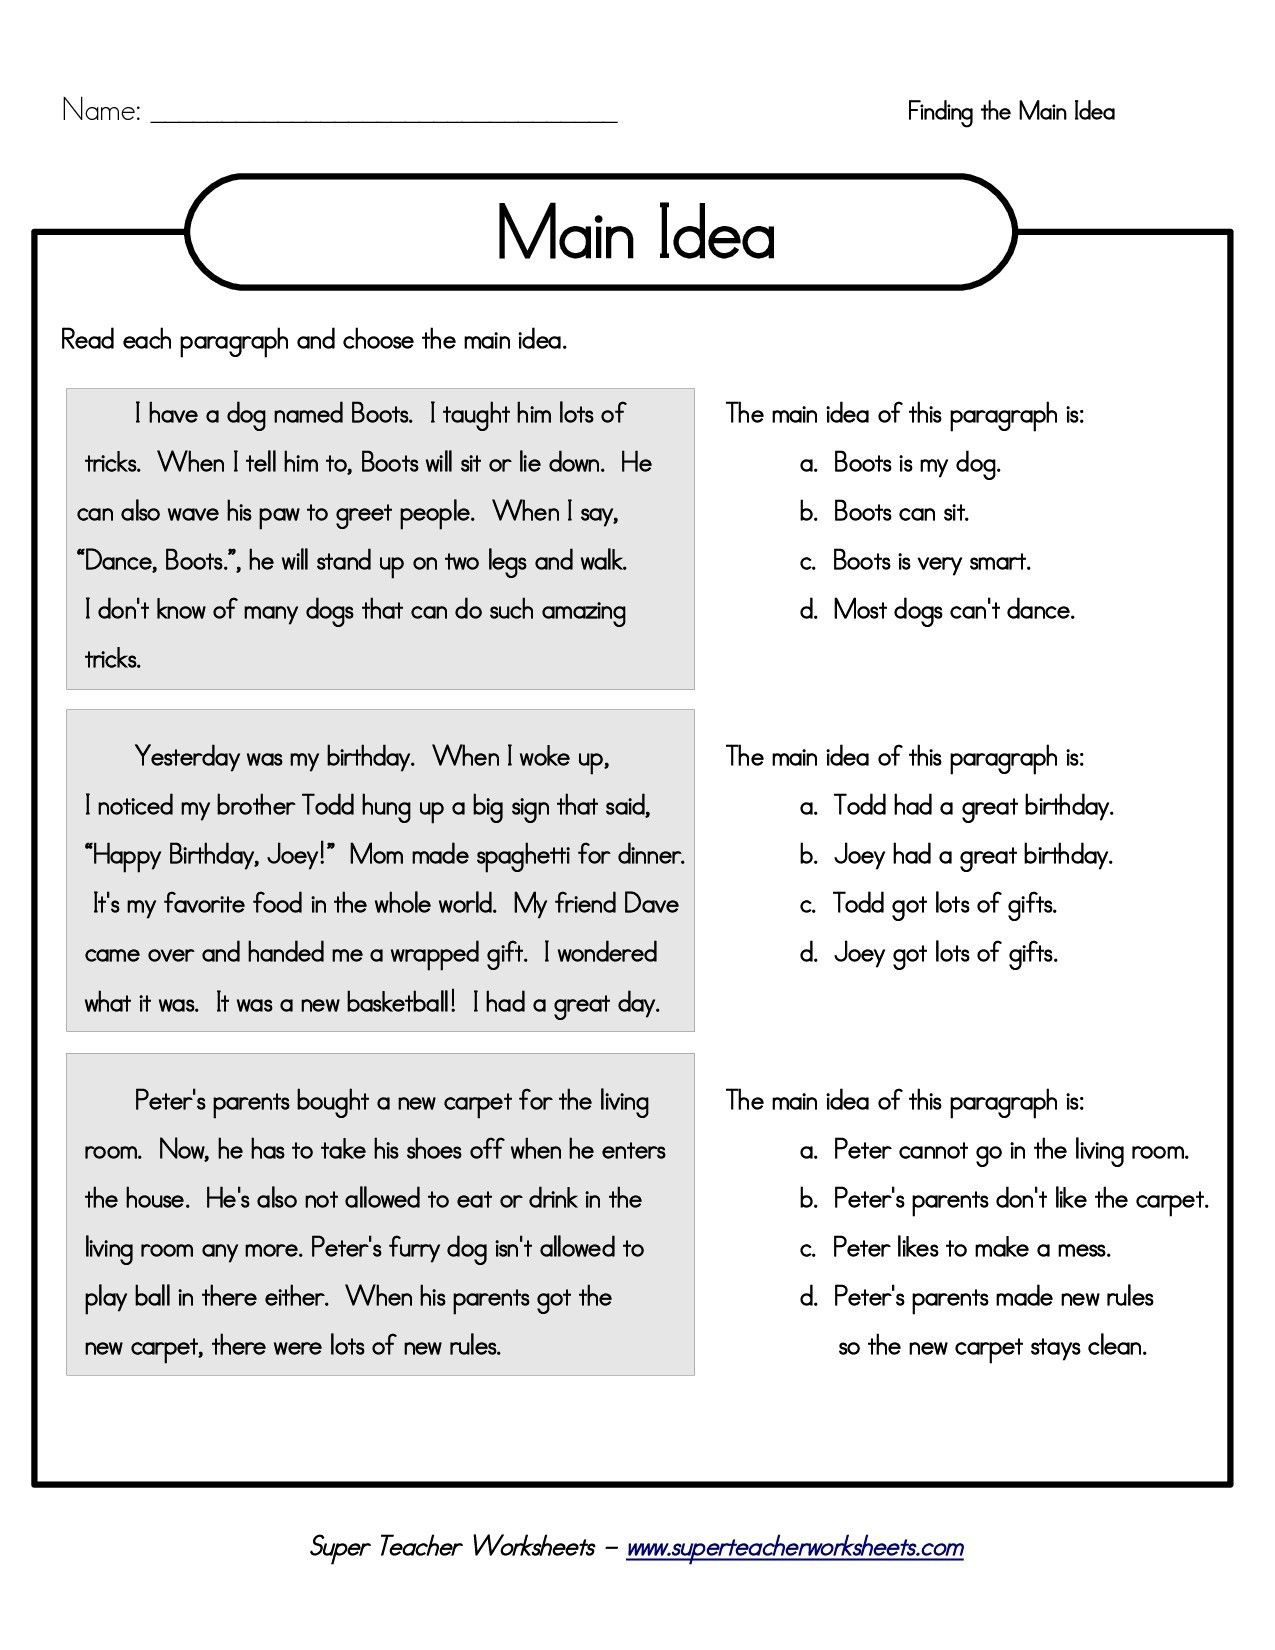 5th Grade Main Idea Worksheets Printable 5th Grade Main Idea Worksheets